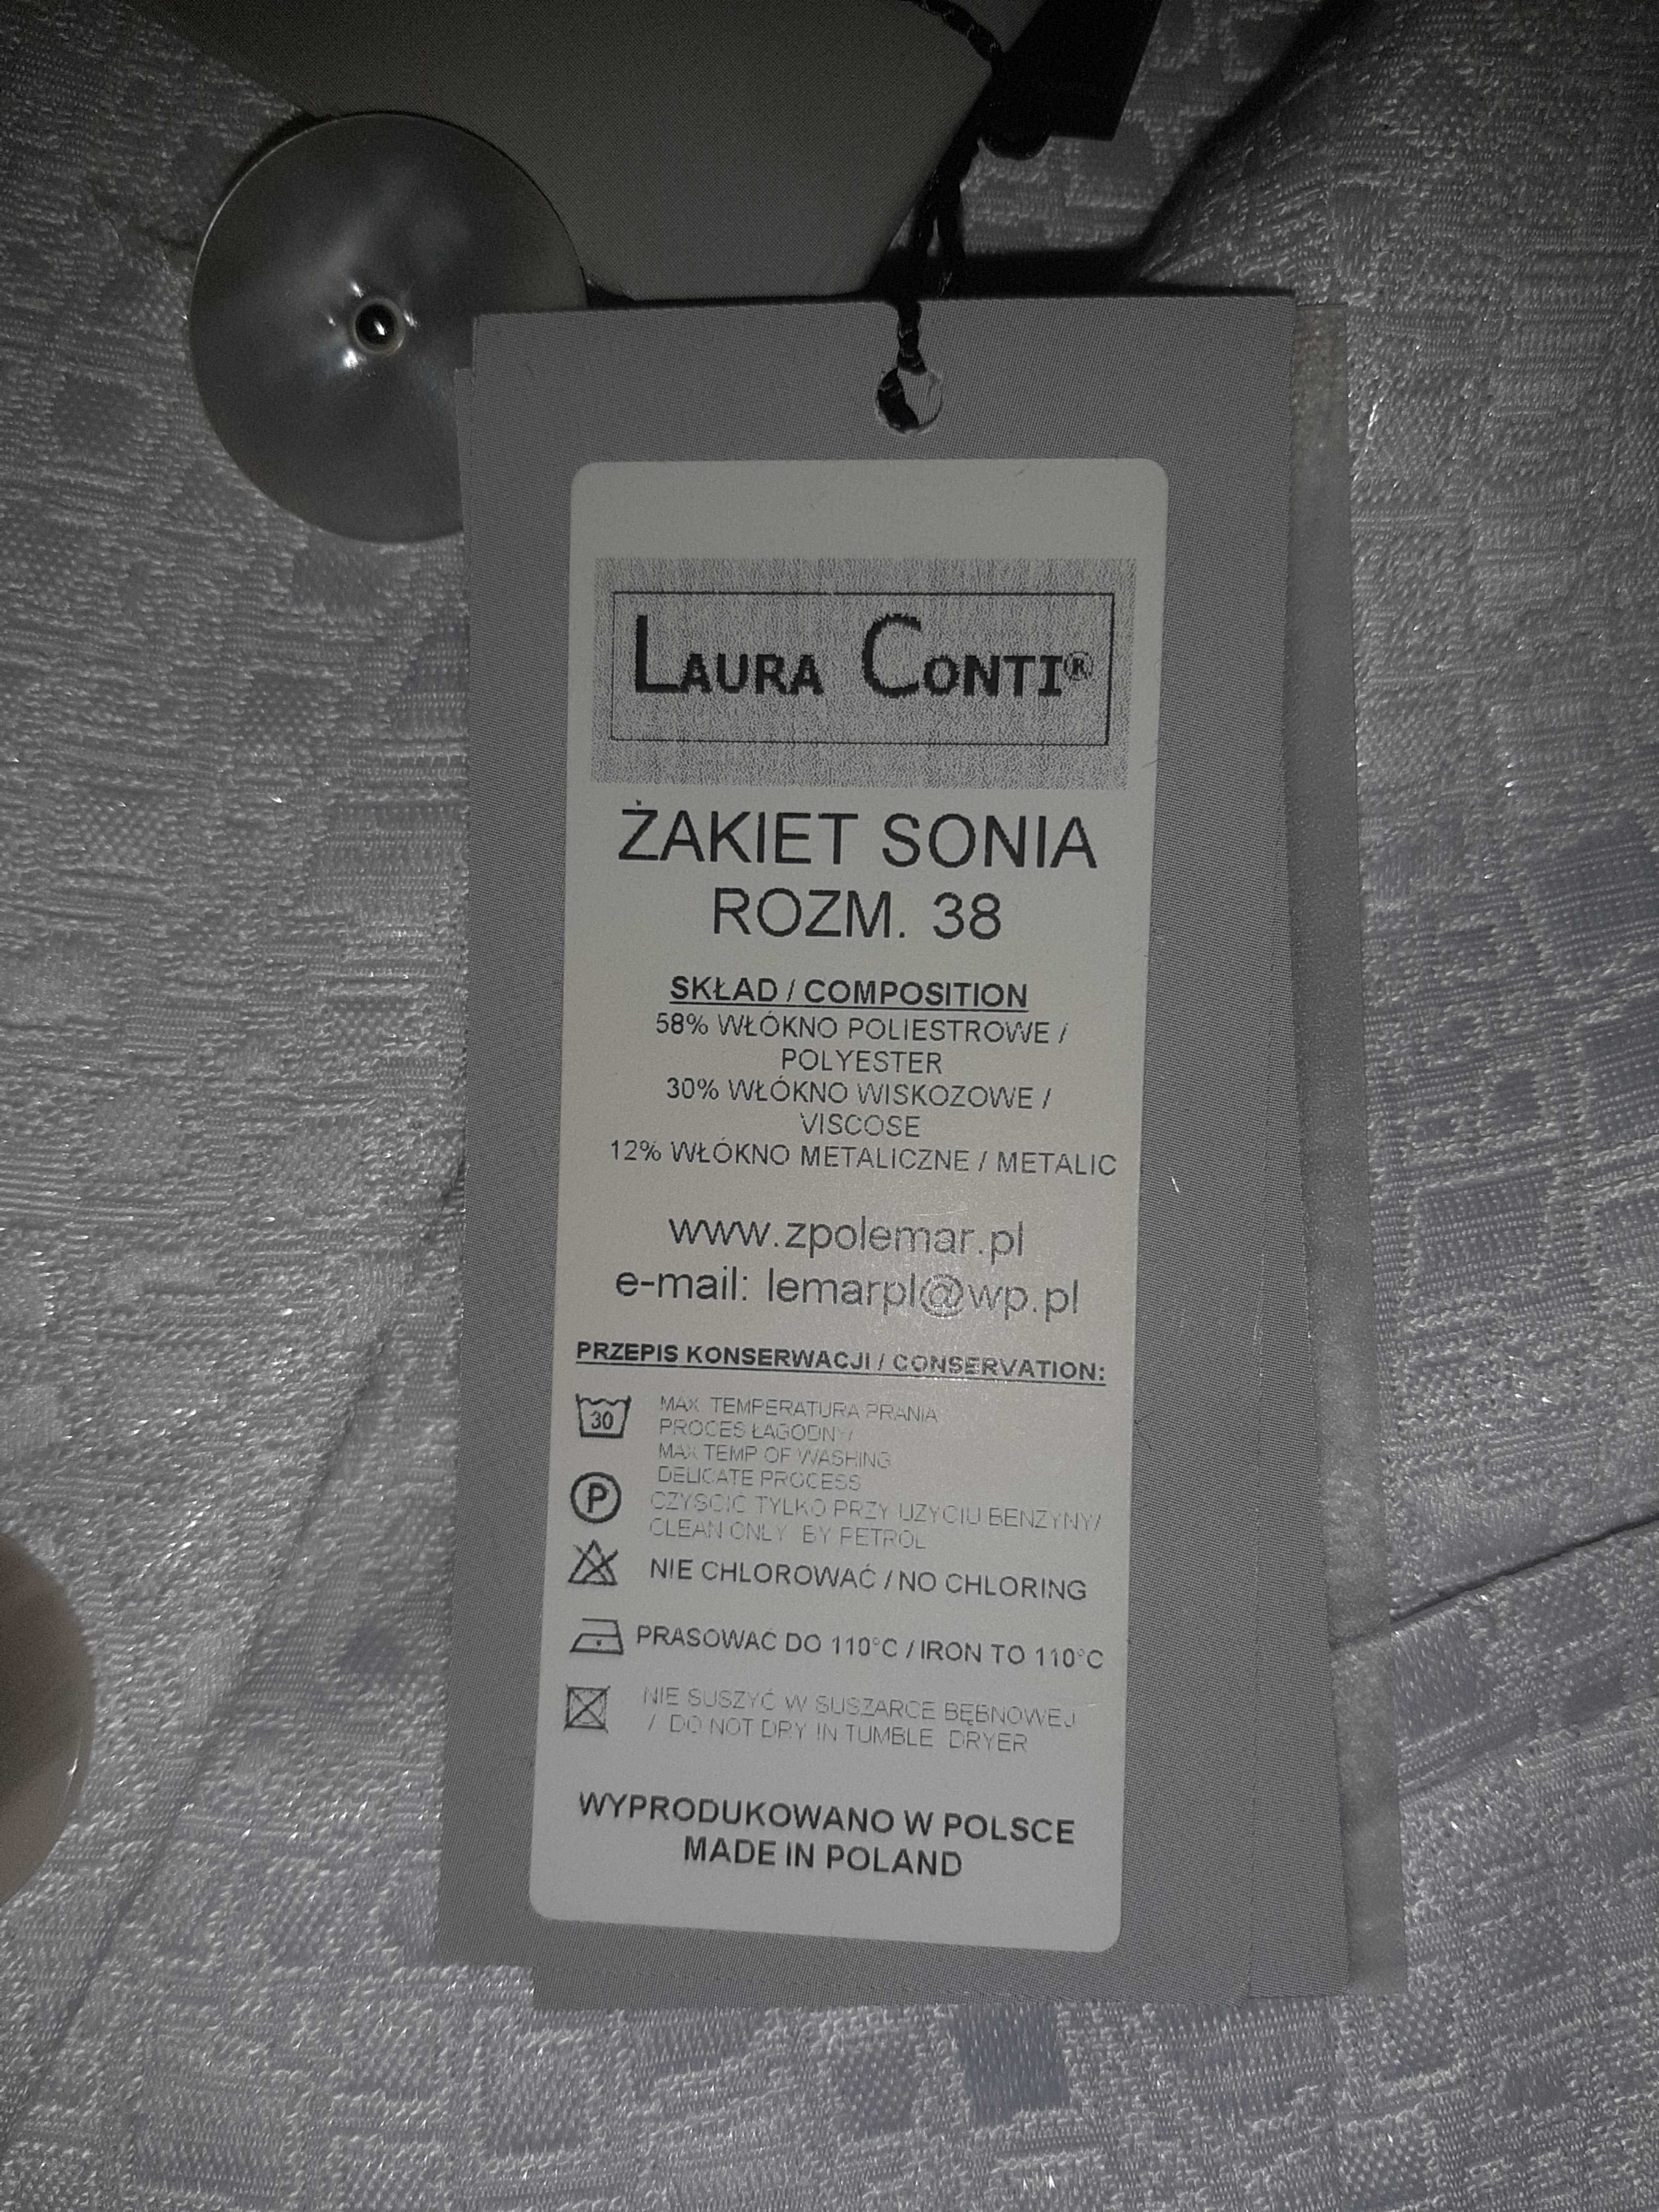 Żakiet Sonia, Laura Conti 38